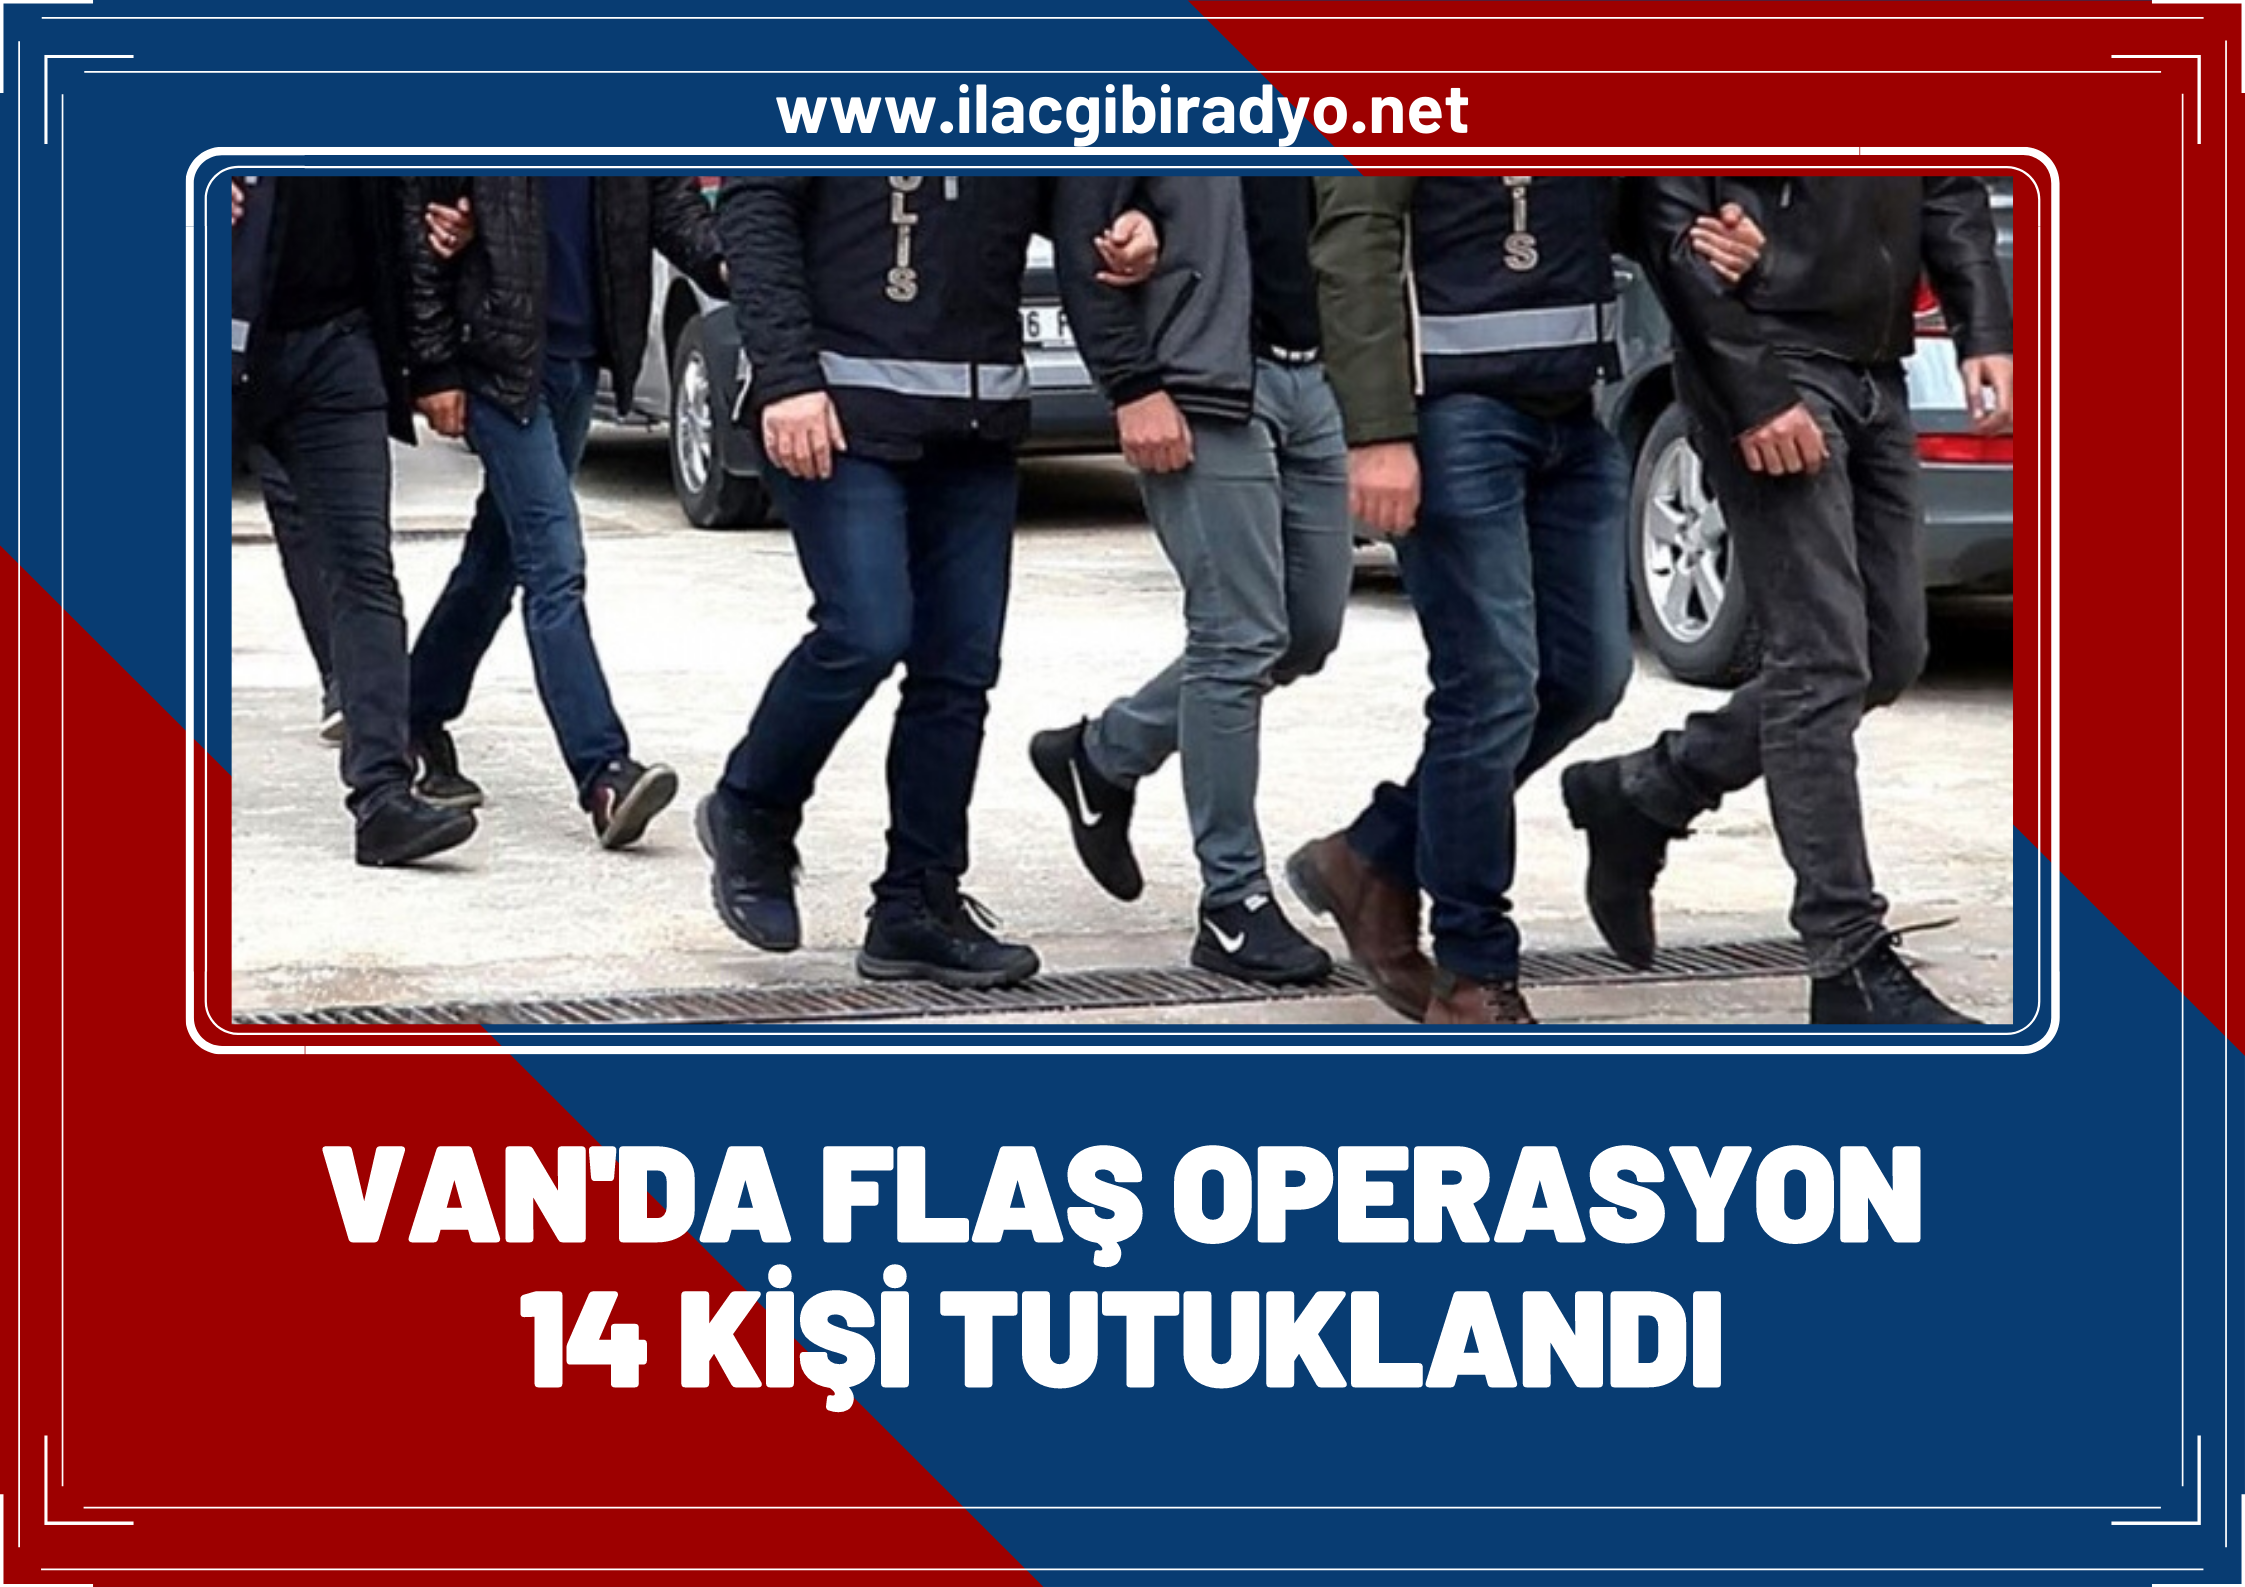 Van'da flaş operasyon: 14 kişi tutuklandı!